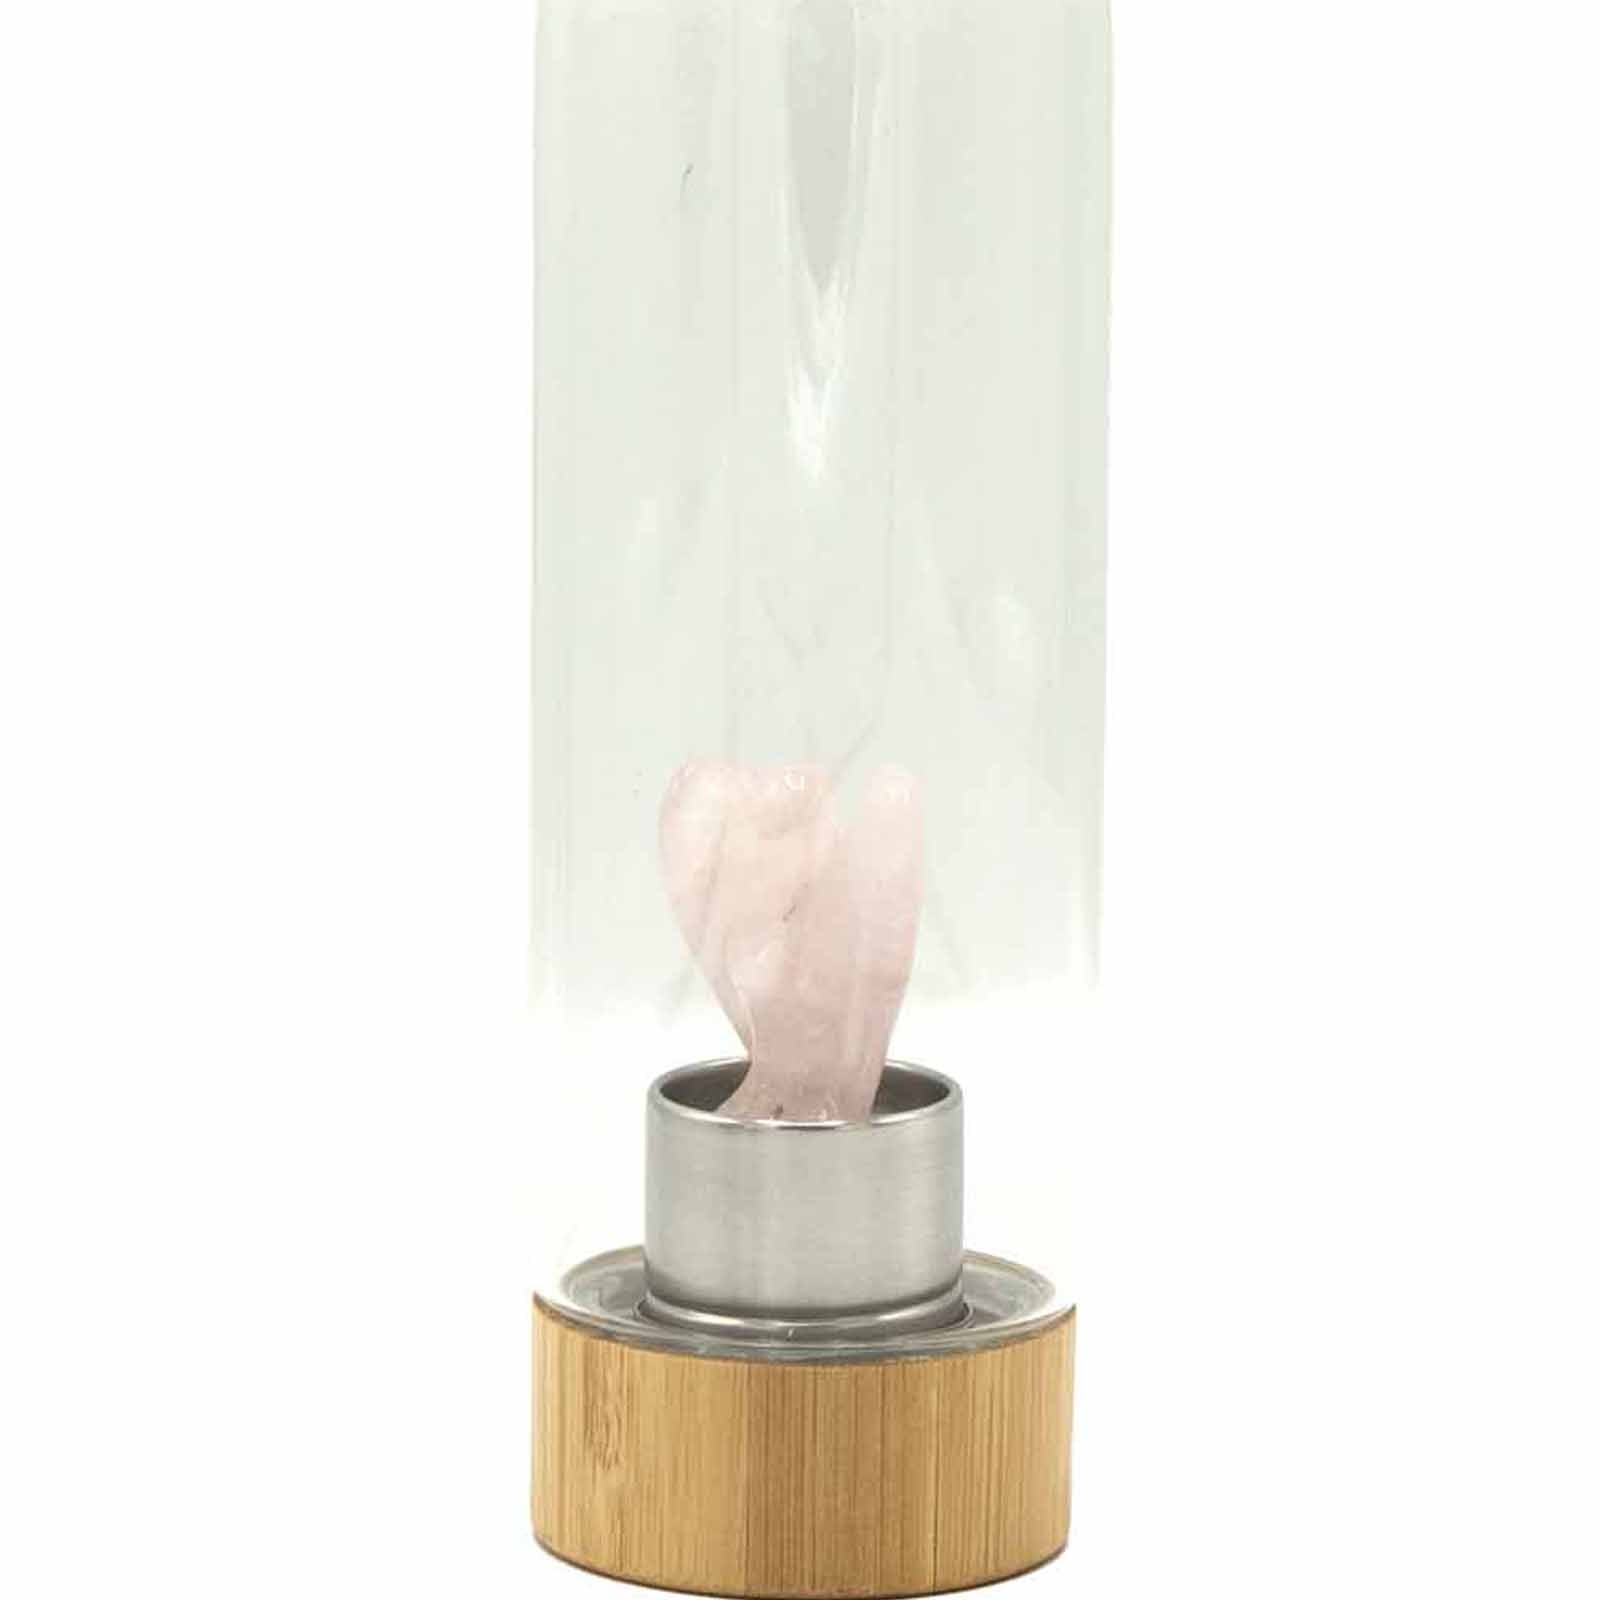 Crystal Infused Glass Water Bottle - Rejuvenating Rose Quartz - Angel